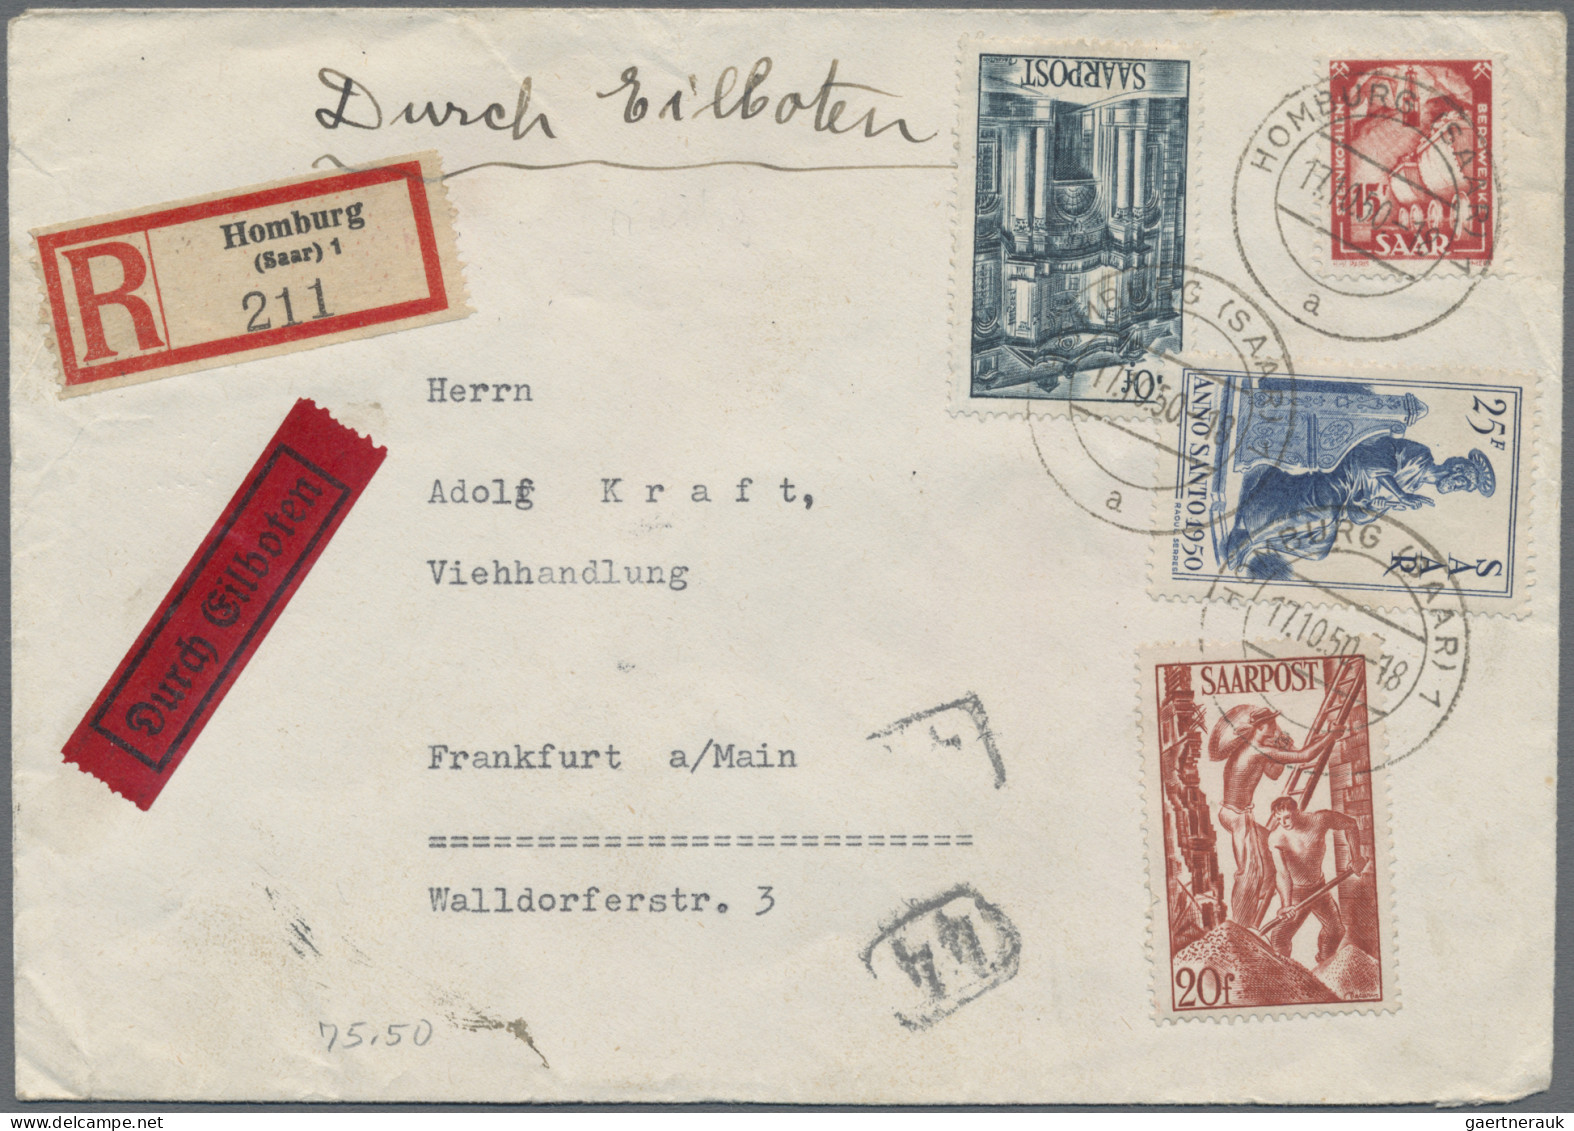 Saarland (1947/56): 1947/1958, nette Partie von 31 Briefen und Karten, dabei att